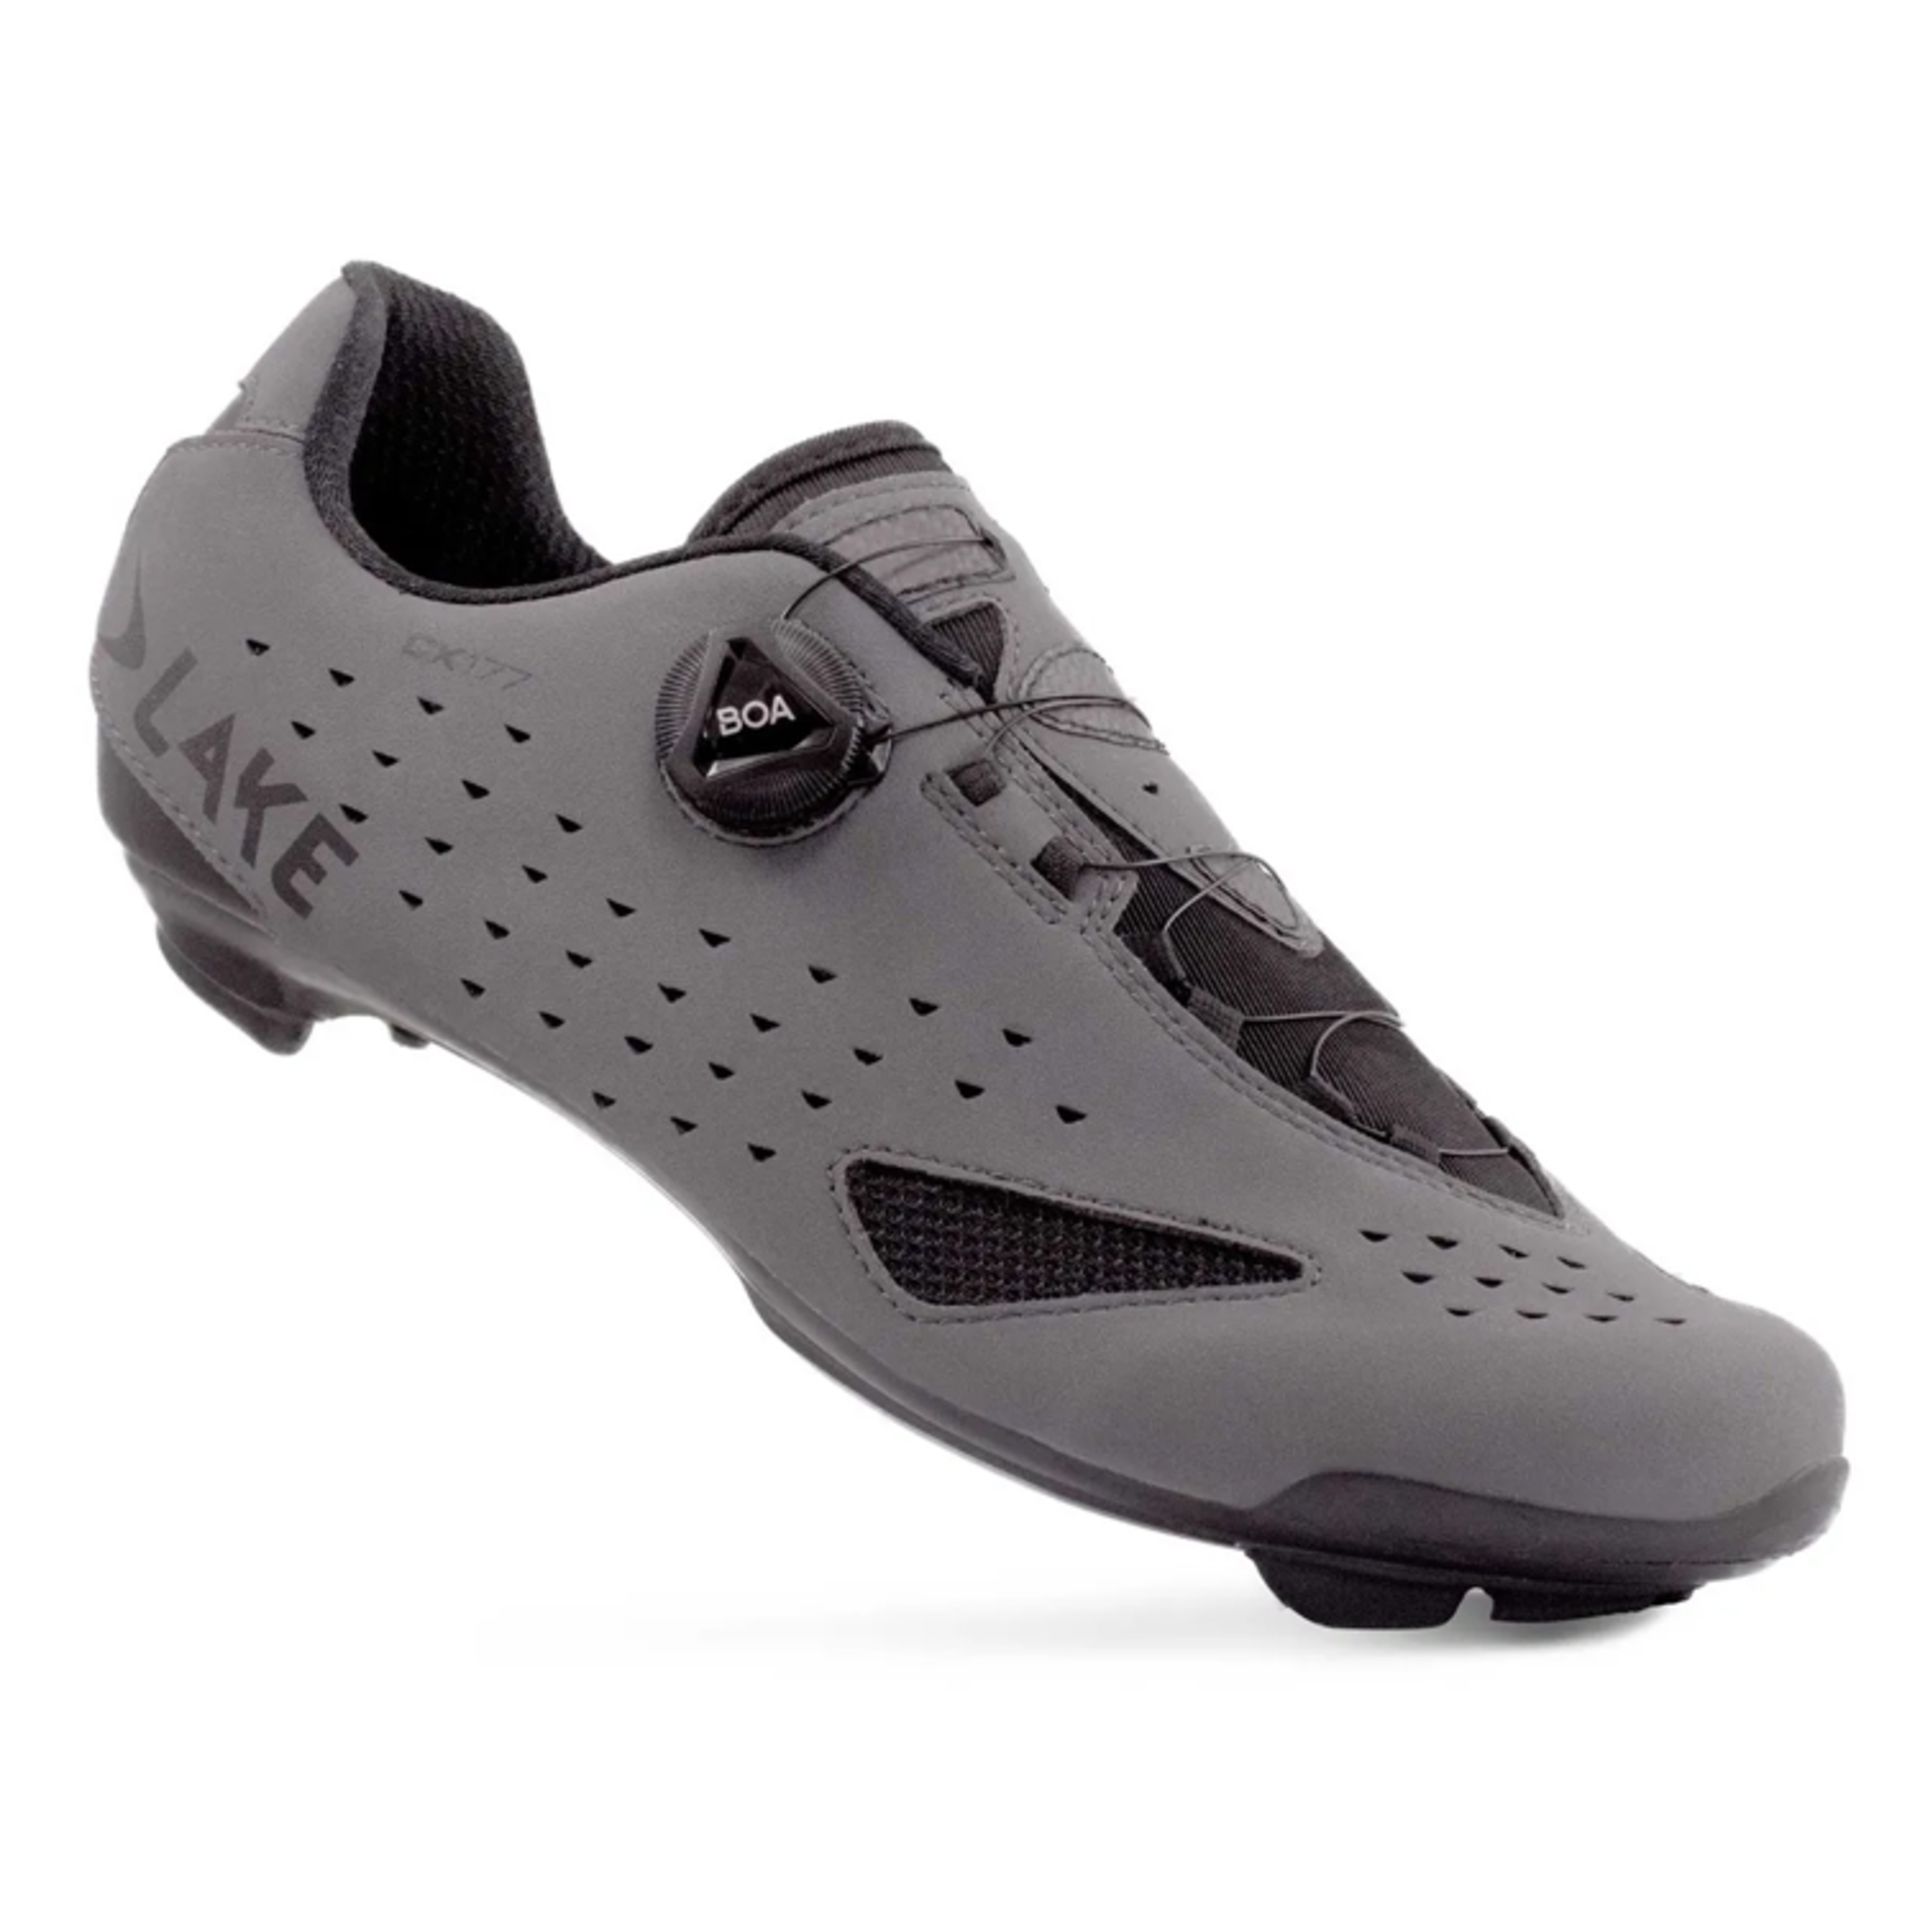 Lake Men's Grey BOA CX177 Road Cycling Shoes, Size